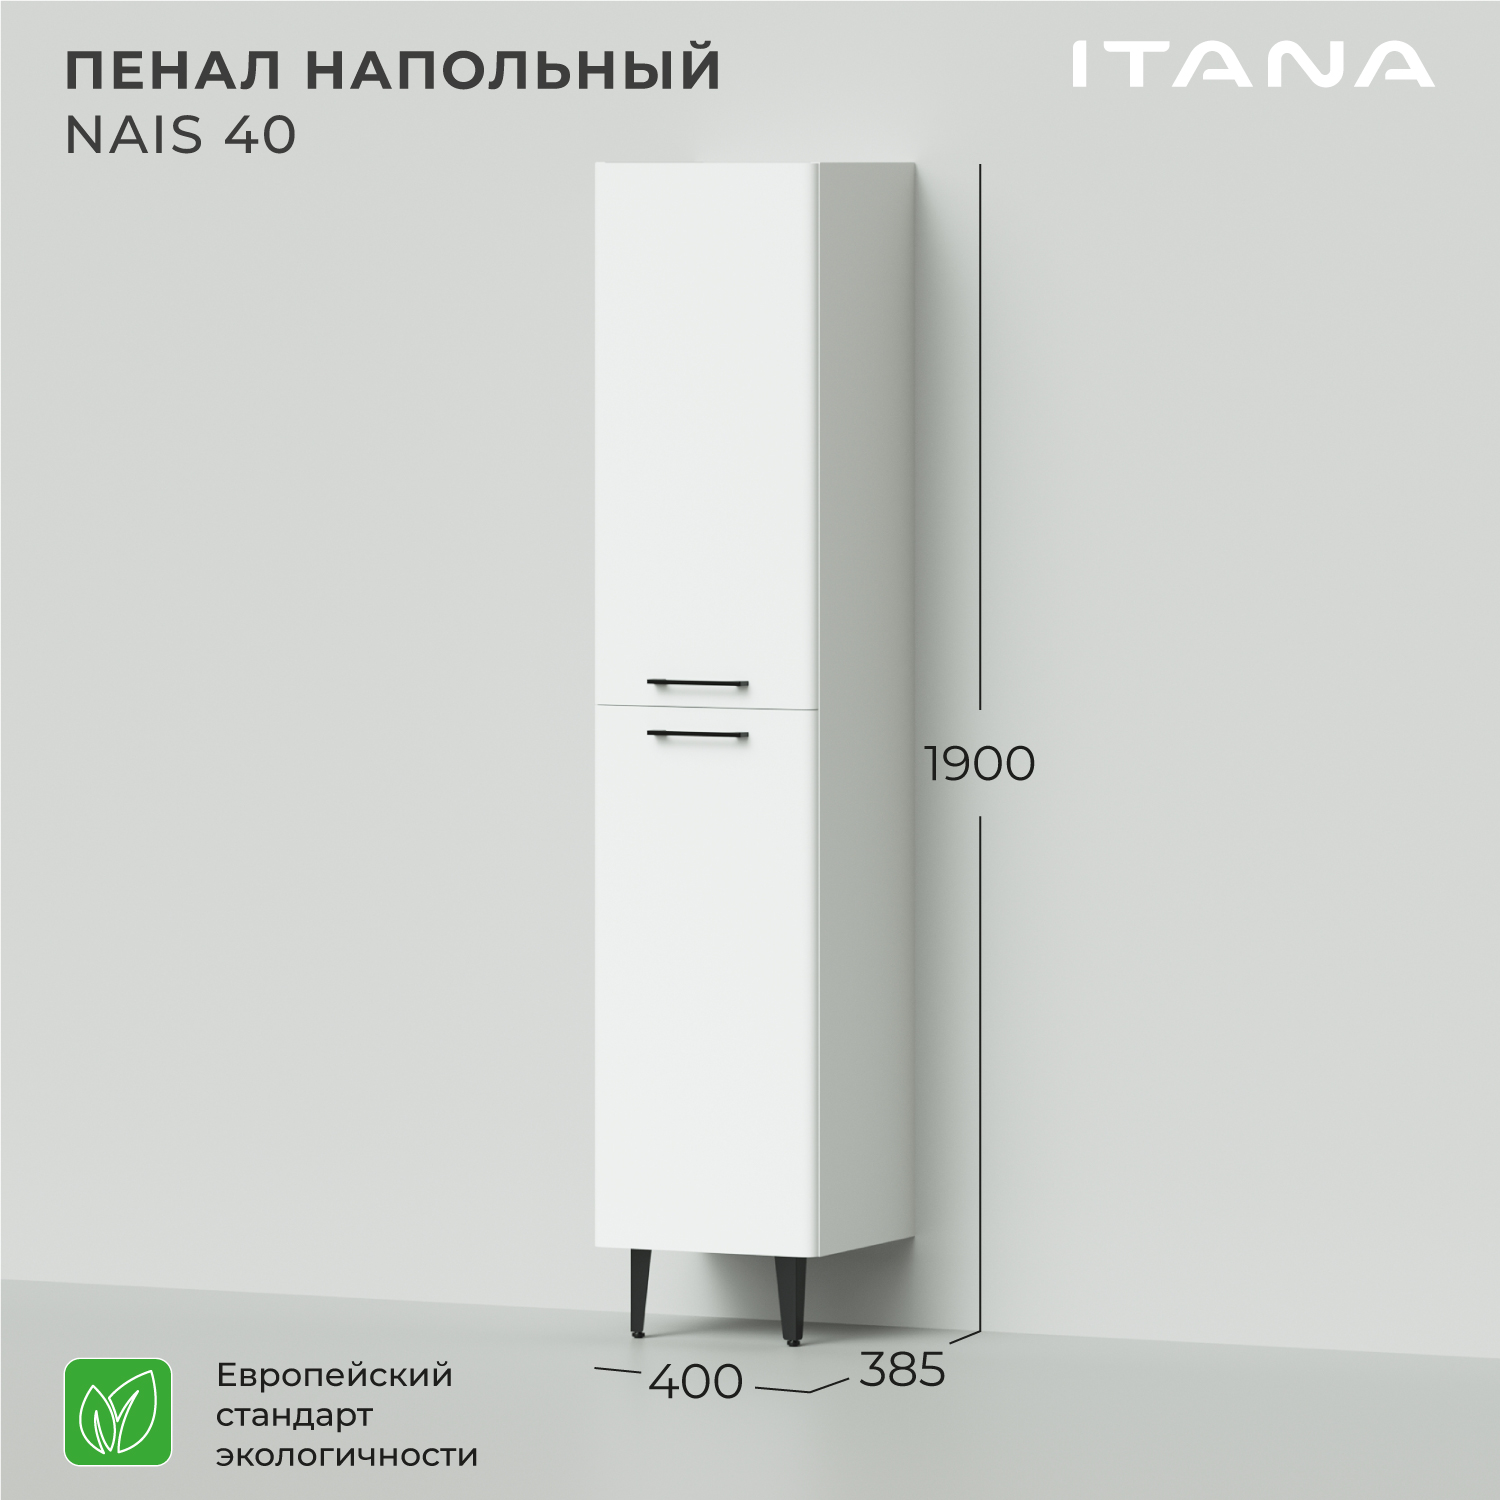 Пенал напольный Итана Nais 40 400х385х1900 шкаф пенал для ванной и туалета белый напольный kuboxy dt8017 15 5х15 5х80 см